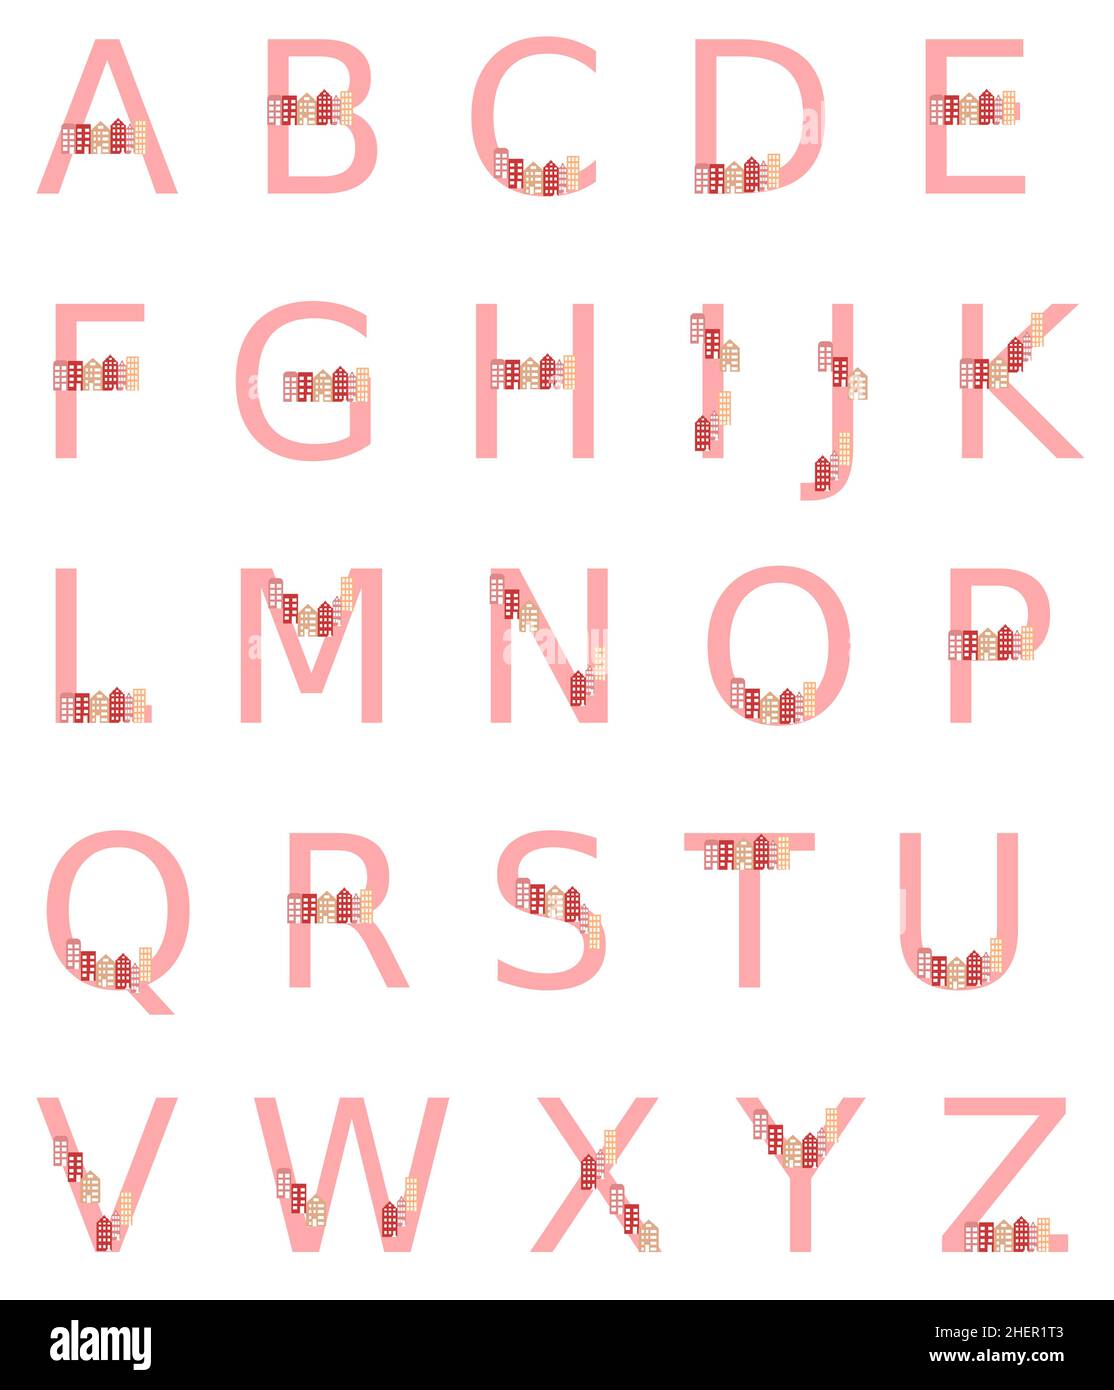 alphabet composé de lettres roses chacune avec une rangée de maisons sur la lettre. paysage urbain sur chaque lettre, isolé sur un fond blanc Illustration de Vecteur